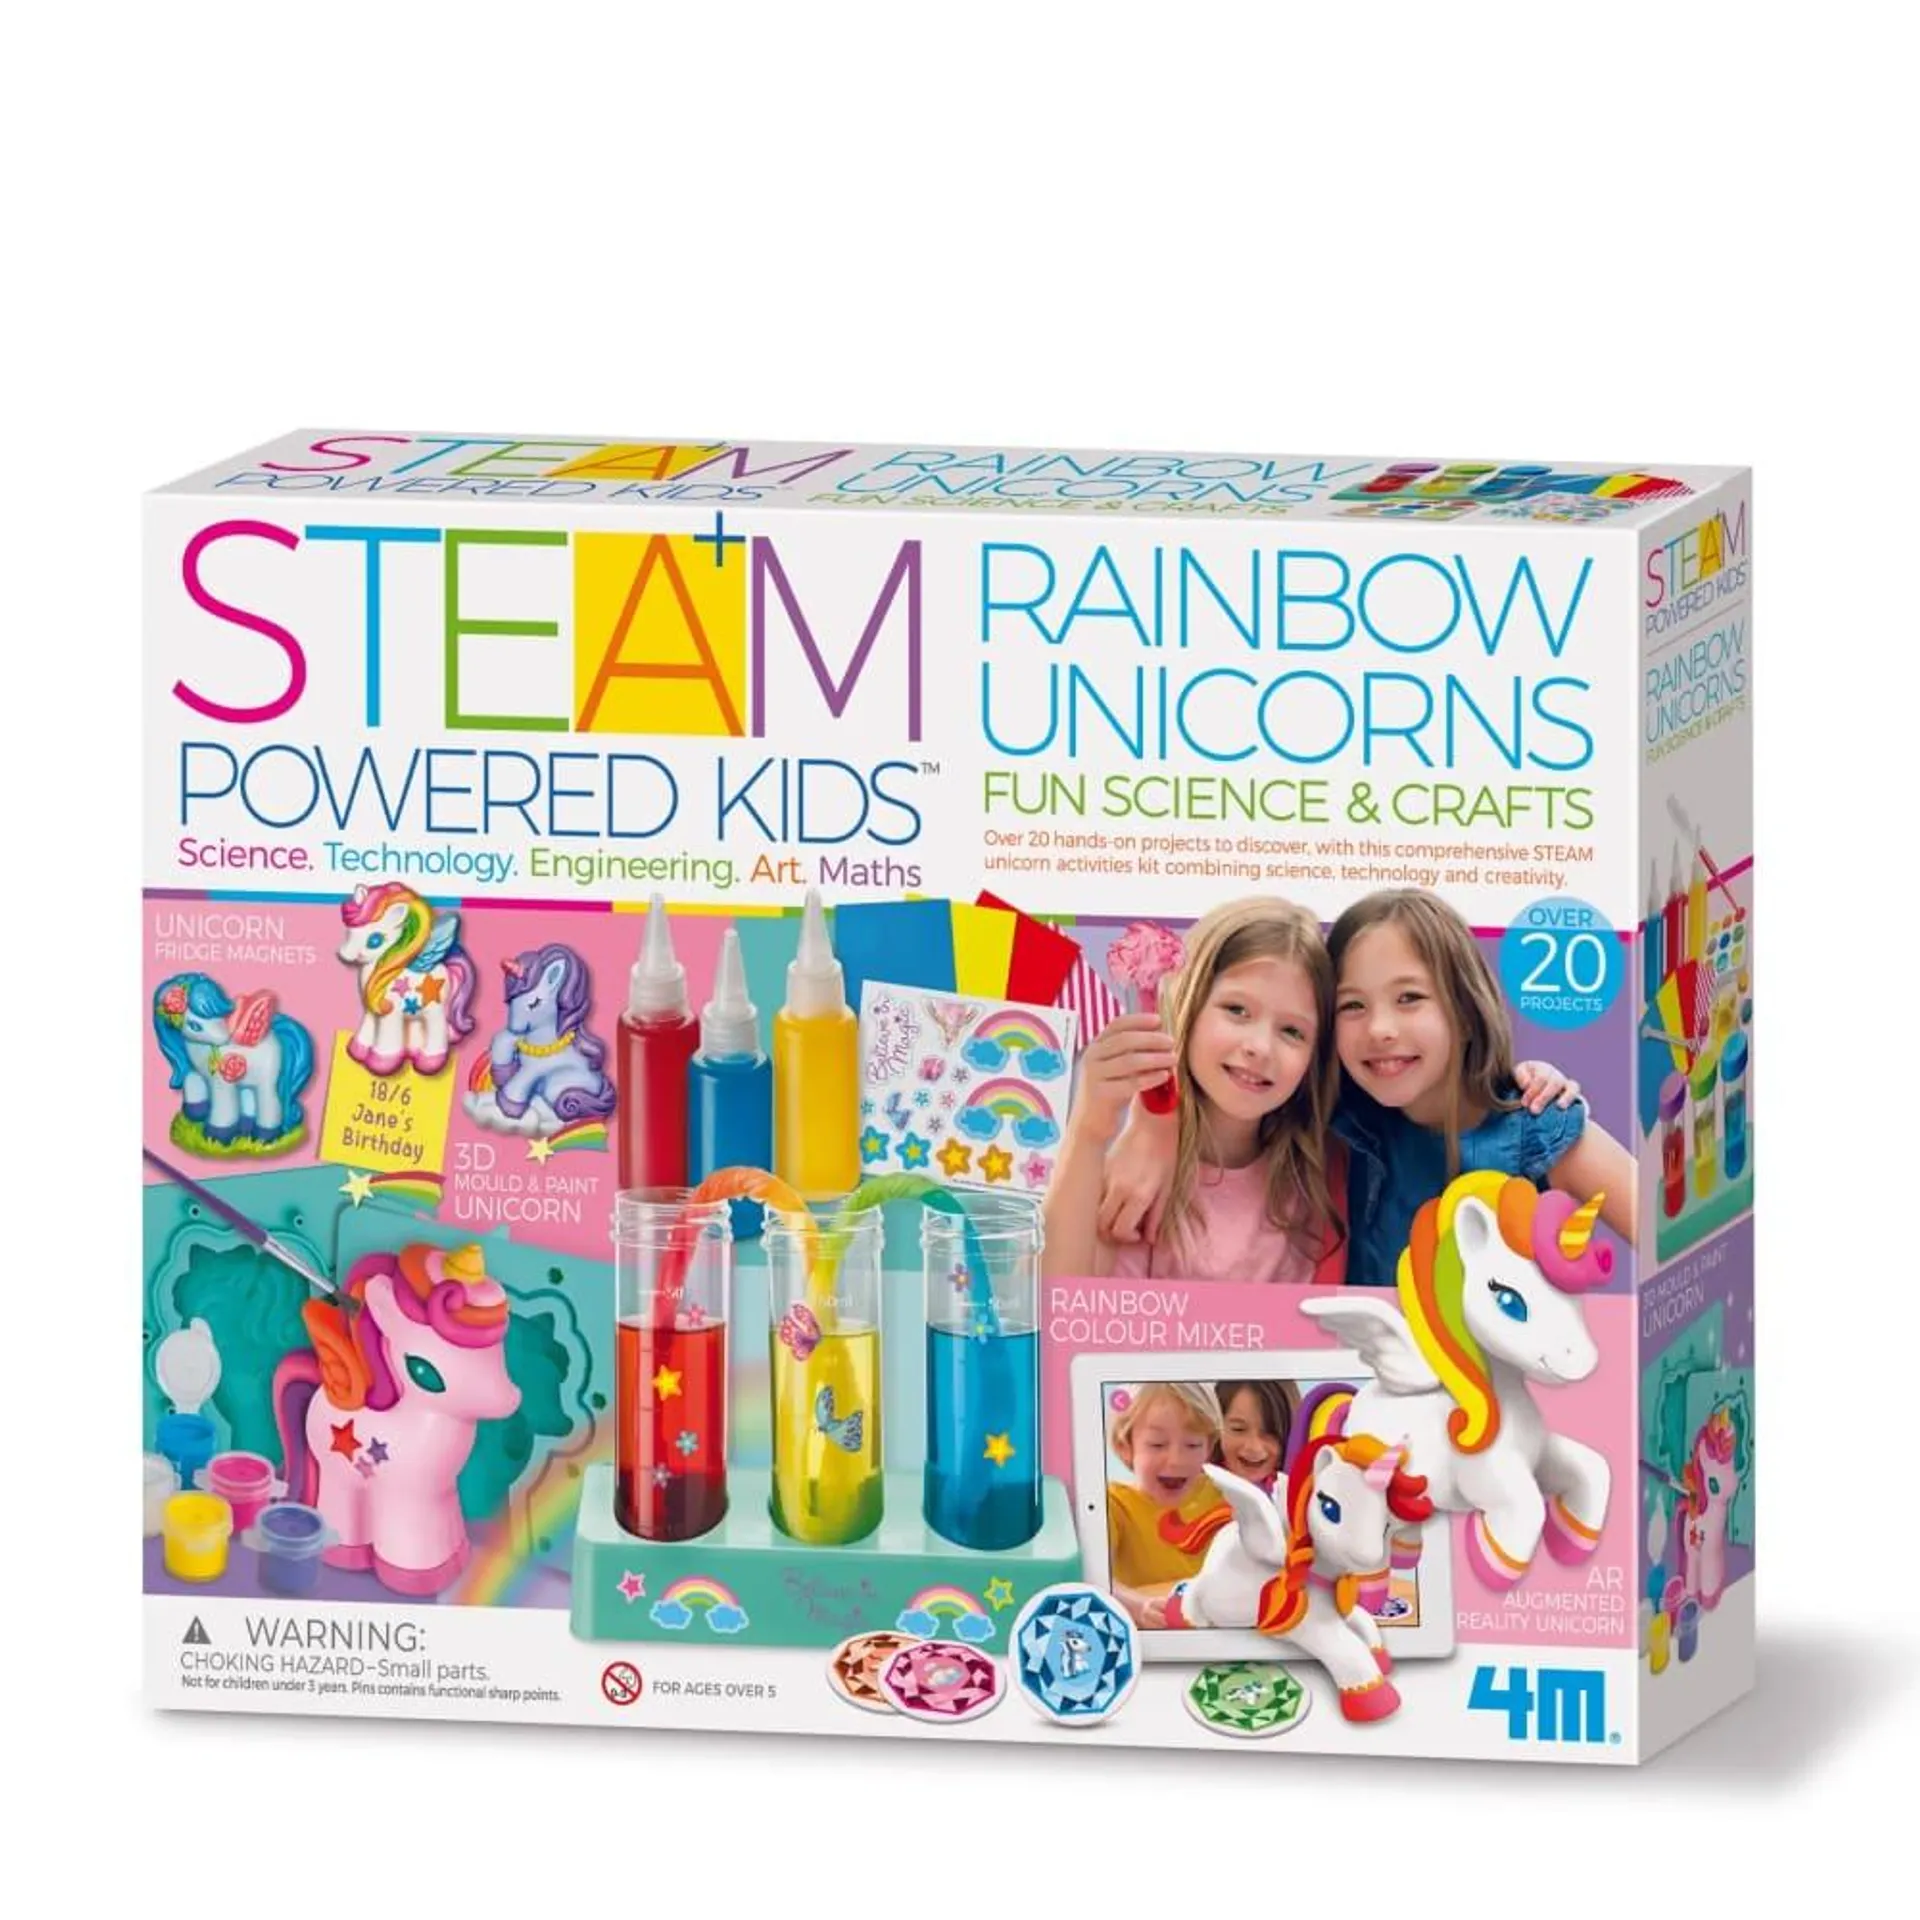 STEAM Powered Kids Rainbow Unicorns